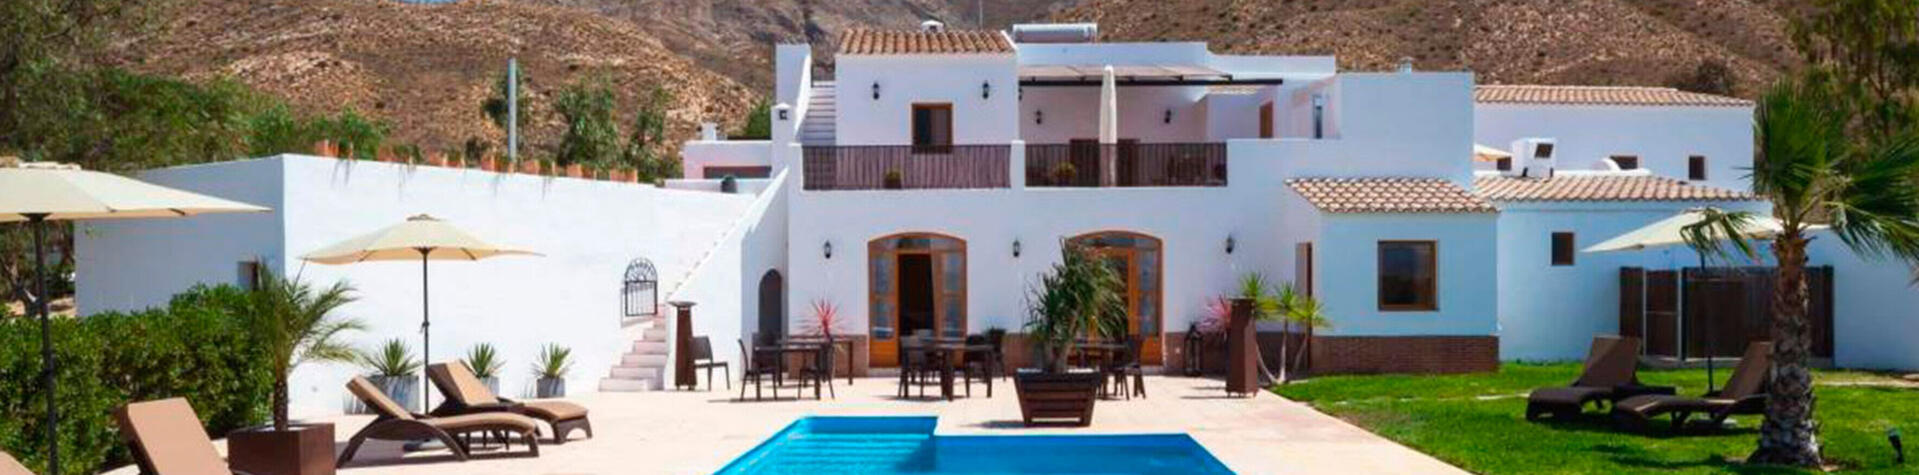 Casas en Almería